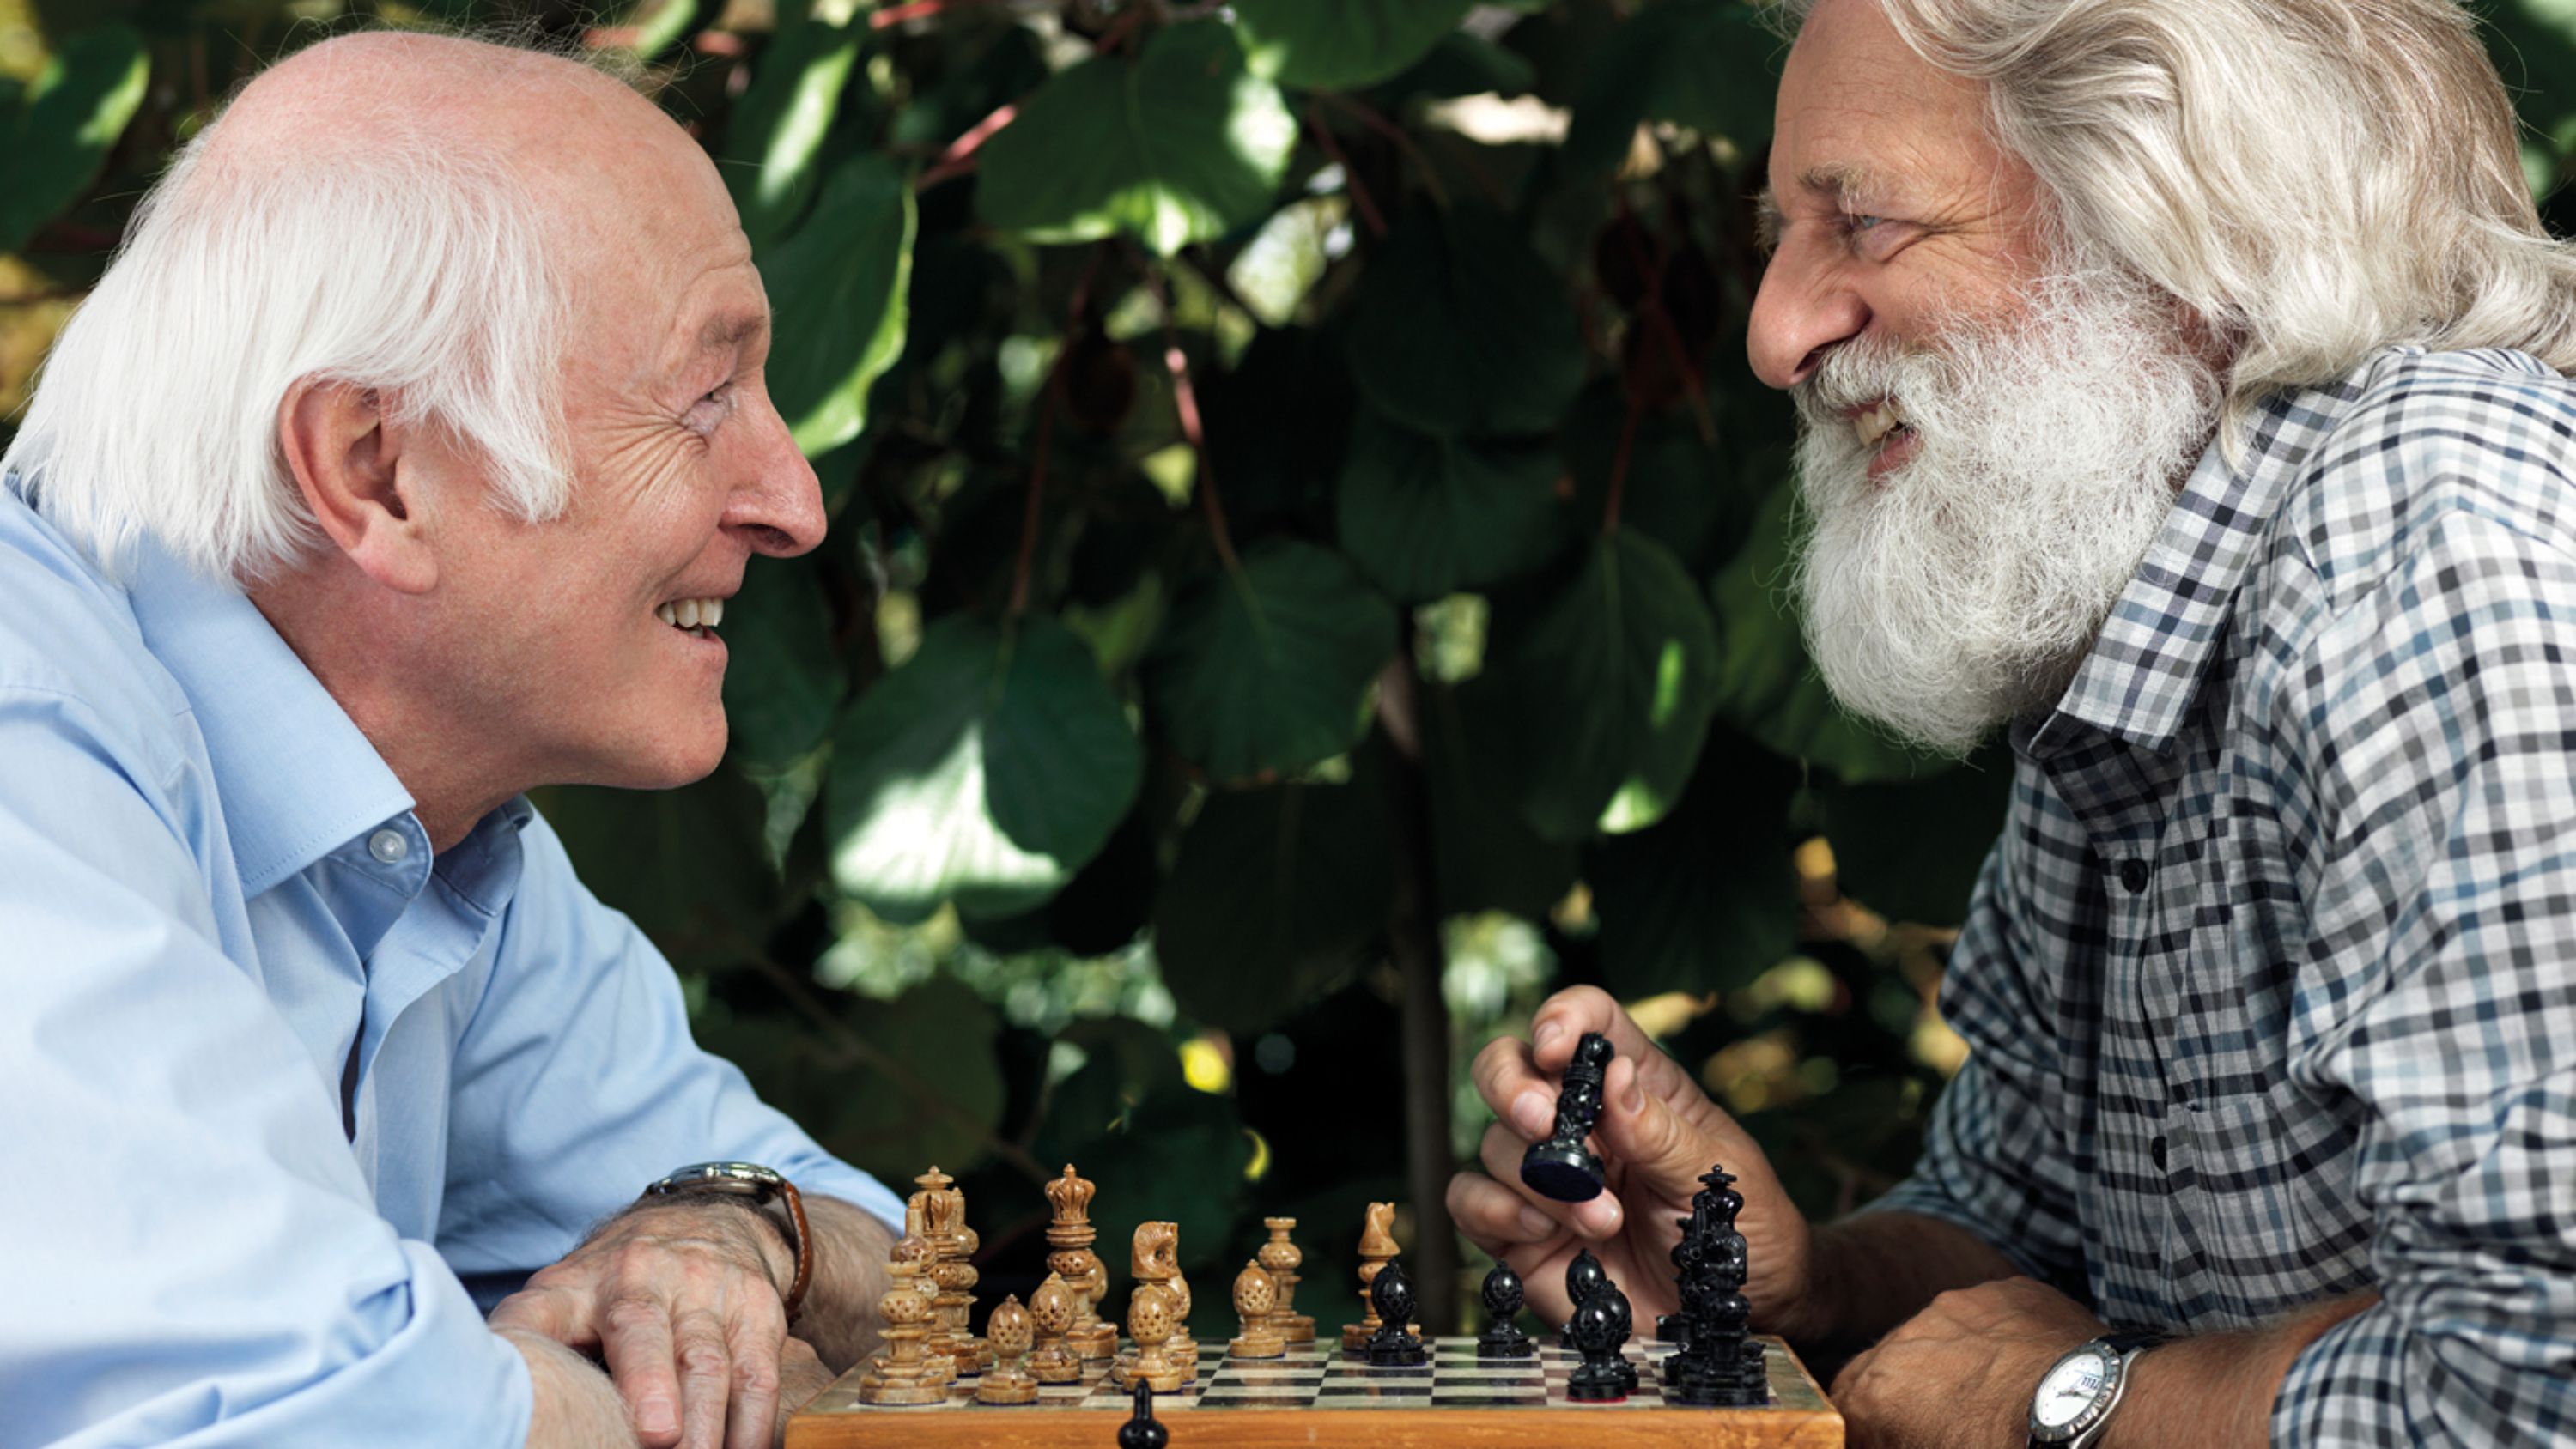 Il pensiero di questi due signori anziani va ben al di là della prossima mossa di scacchi: hanno infatti redatto un mandato precauzionale.